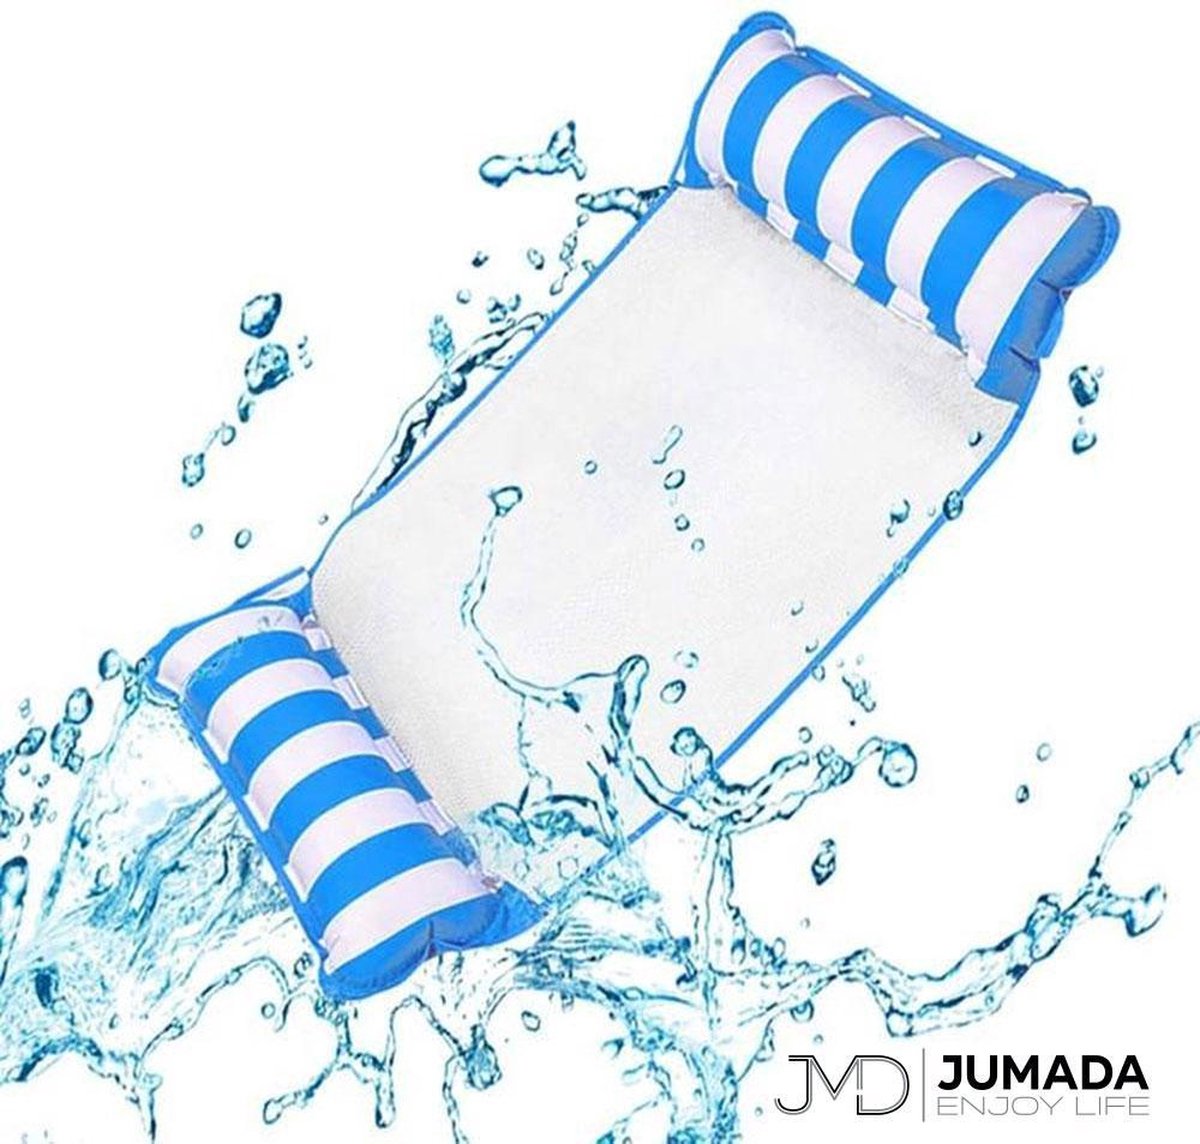 Jumada's Opblaasbaar Hangmat voor Zwembad - Luchtbed Zwembad - Luchtmatras - Waterhangmat - Lichtblauw/Wit